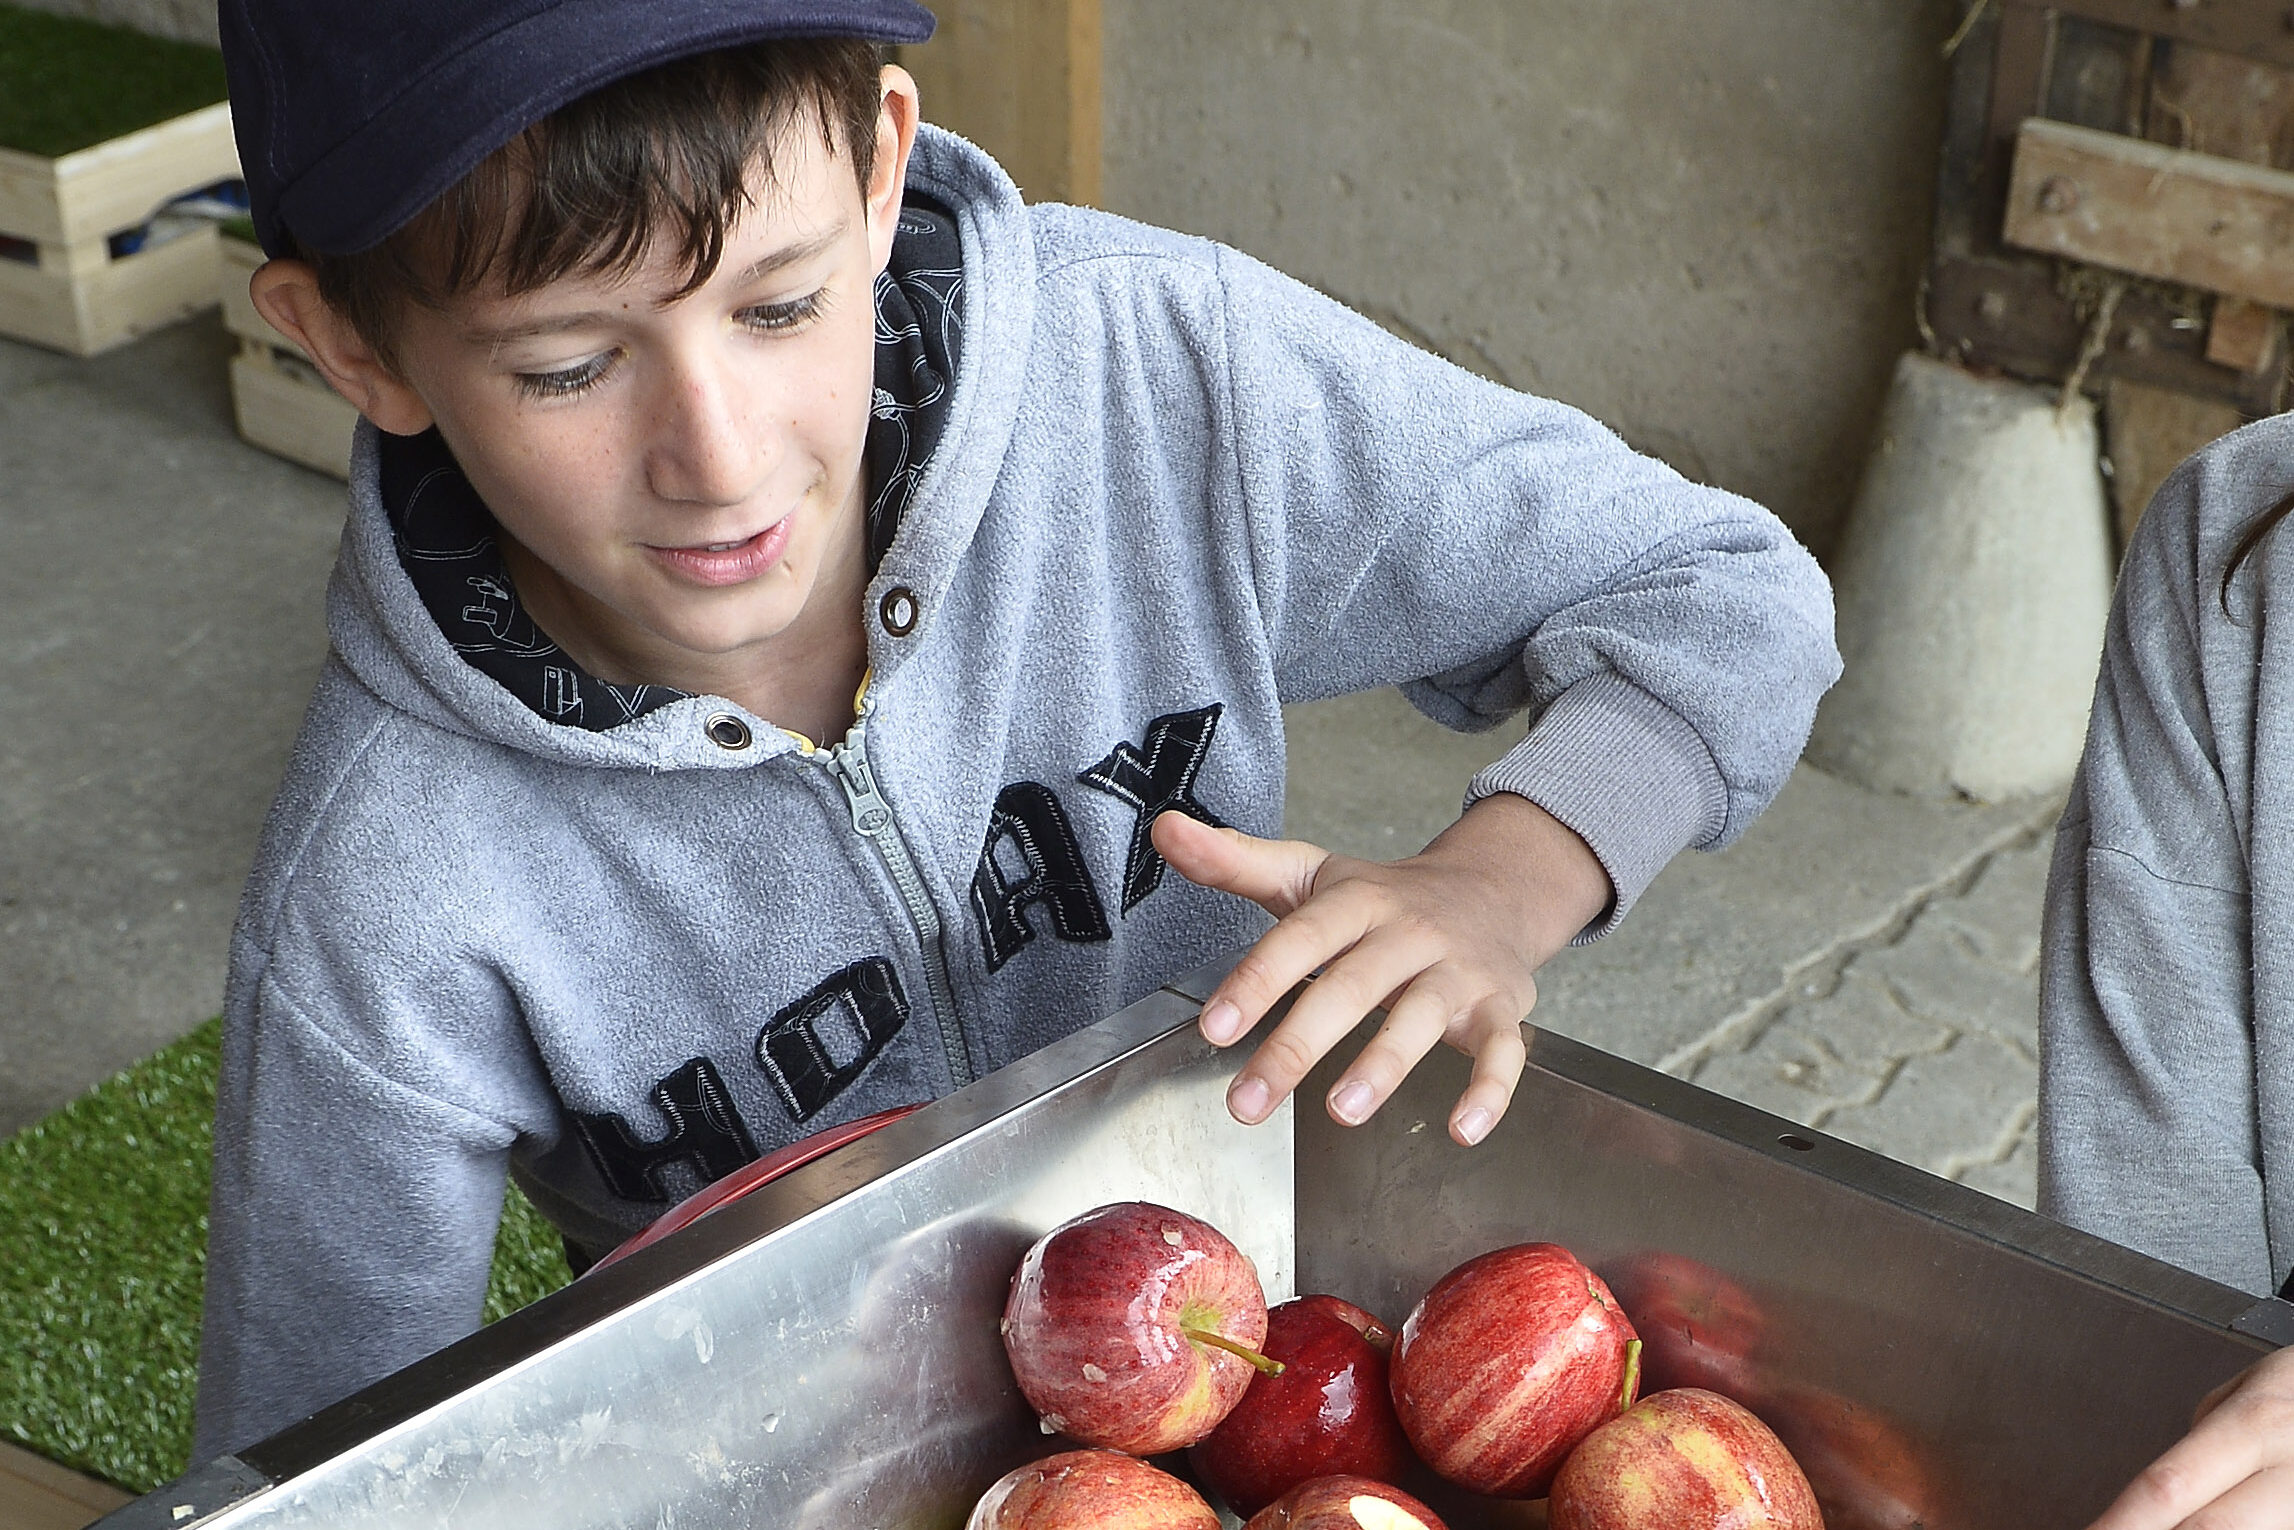 Schüler presst Äpfel zu Most, den Weg des Obstes vom Apfel zum Most kennenlernen.